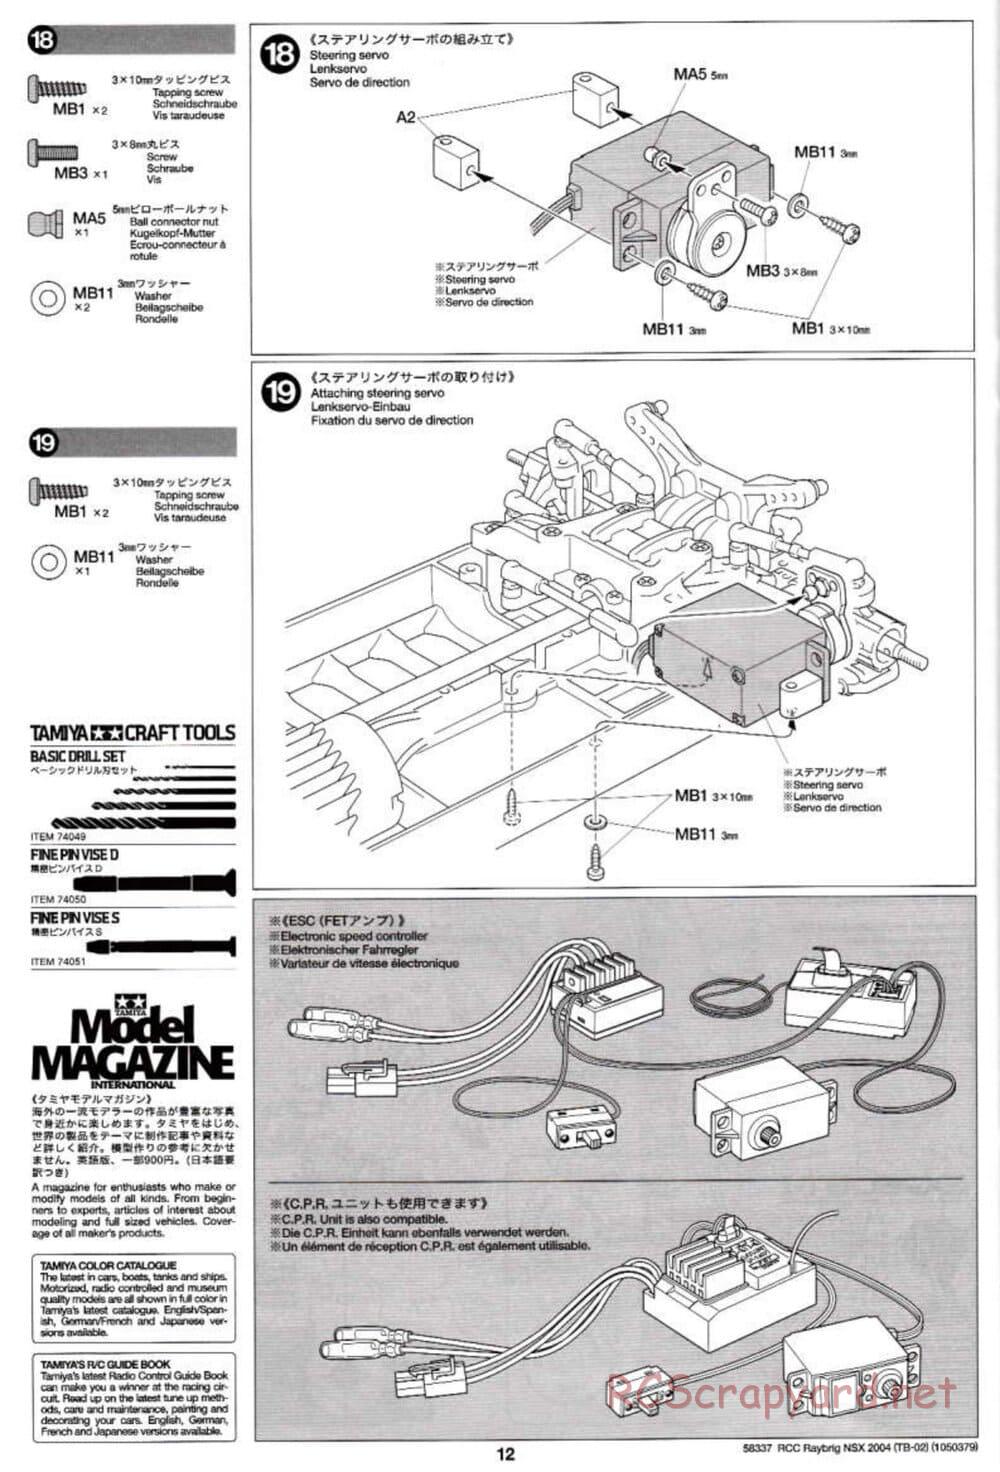 Tamiya - Raybrig NSX 2004 - TB-02 Chassis - Manual - Page 12